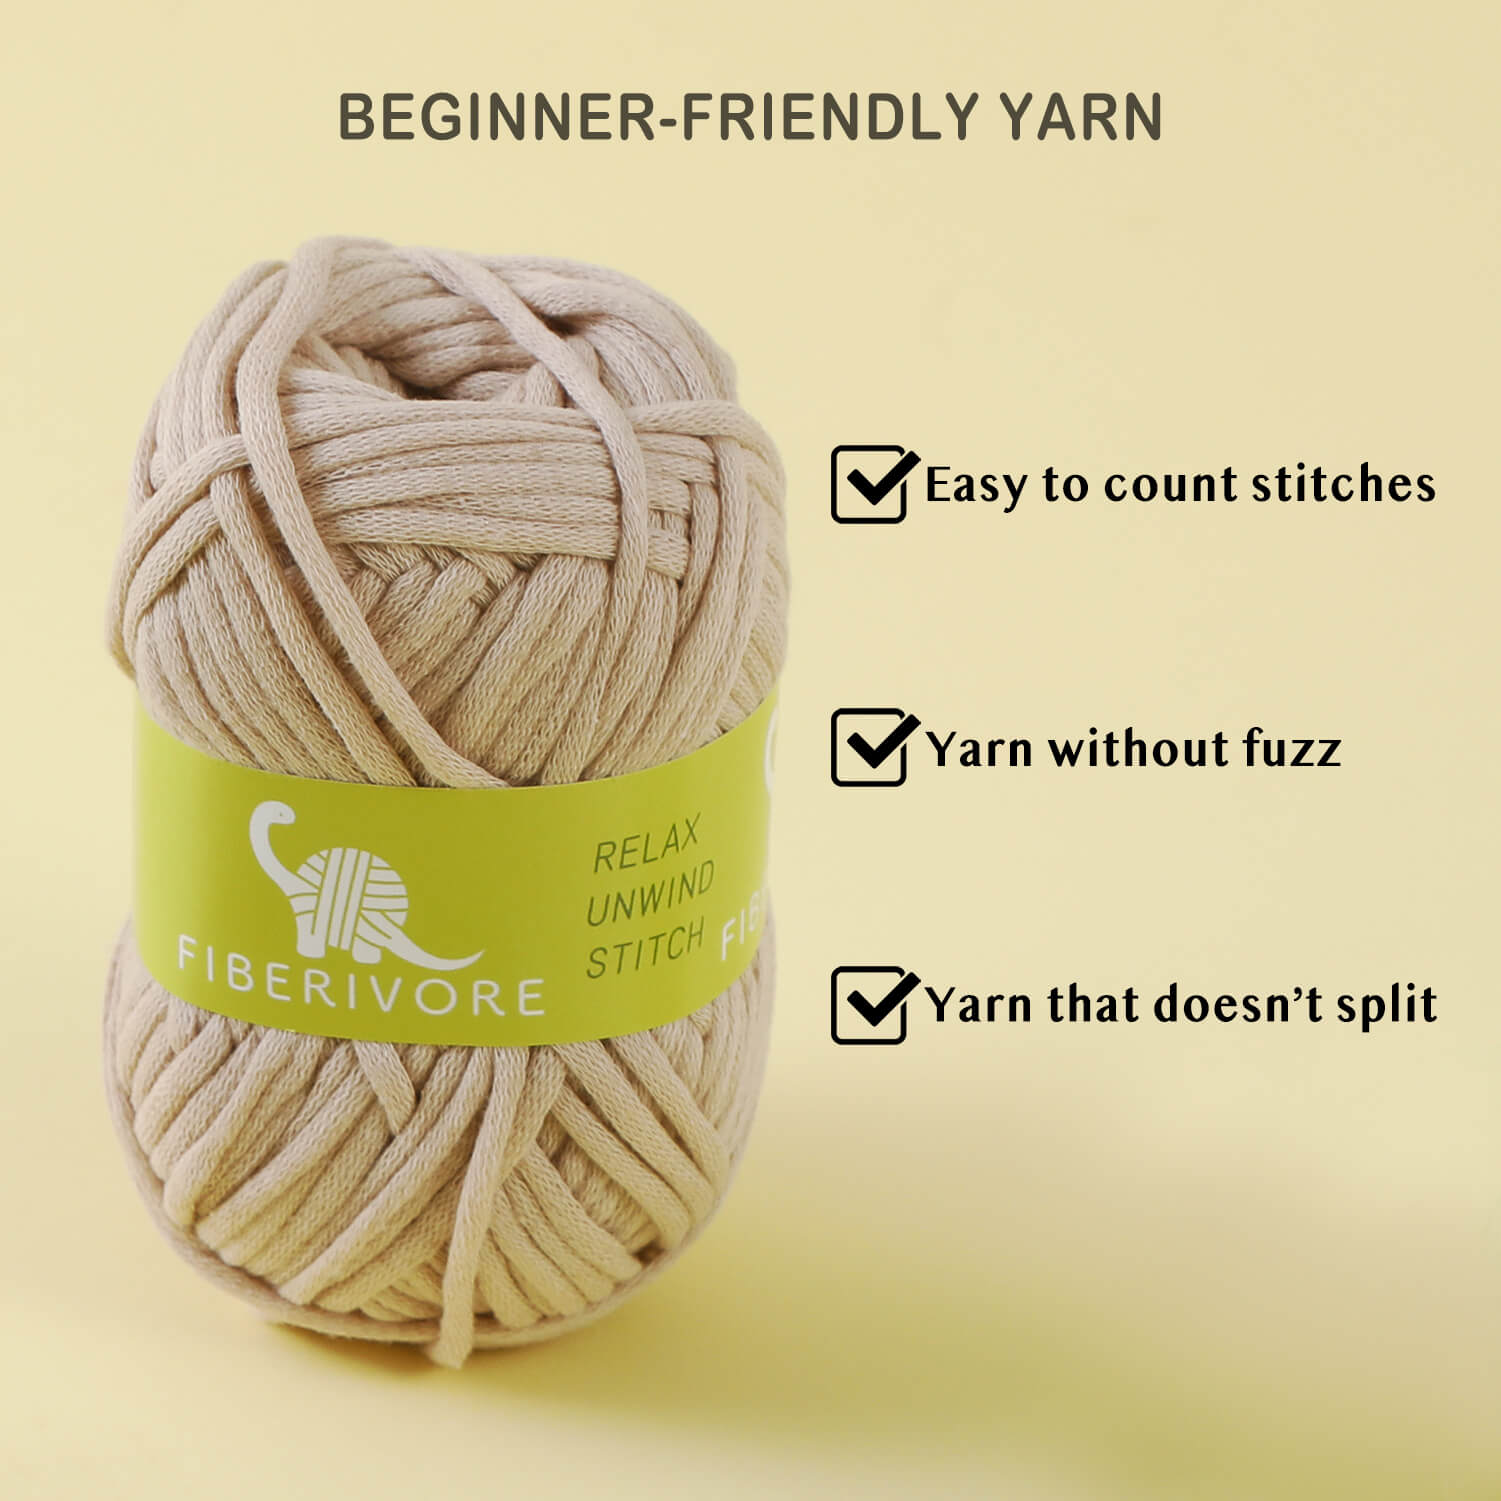 Crochet Kit for Beginners, Beginner Crochet Kit for Adults and